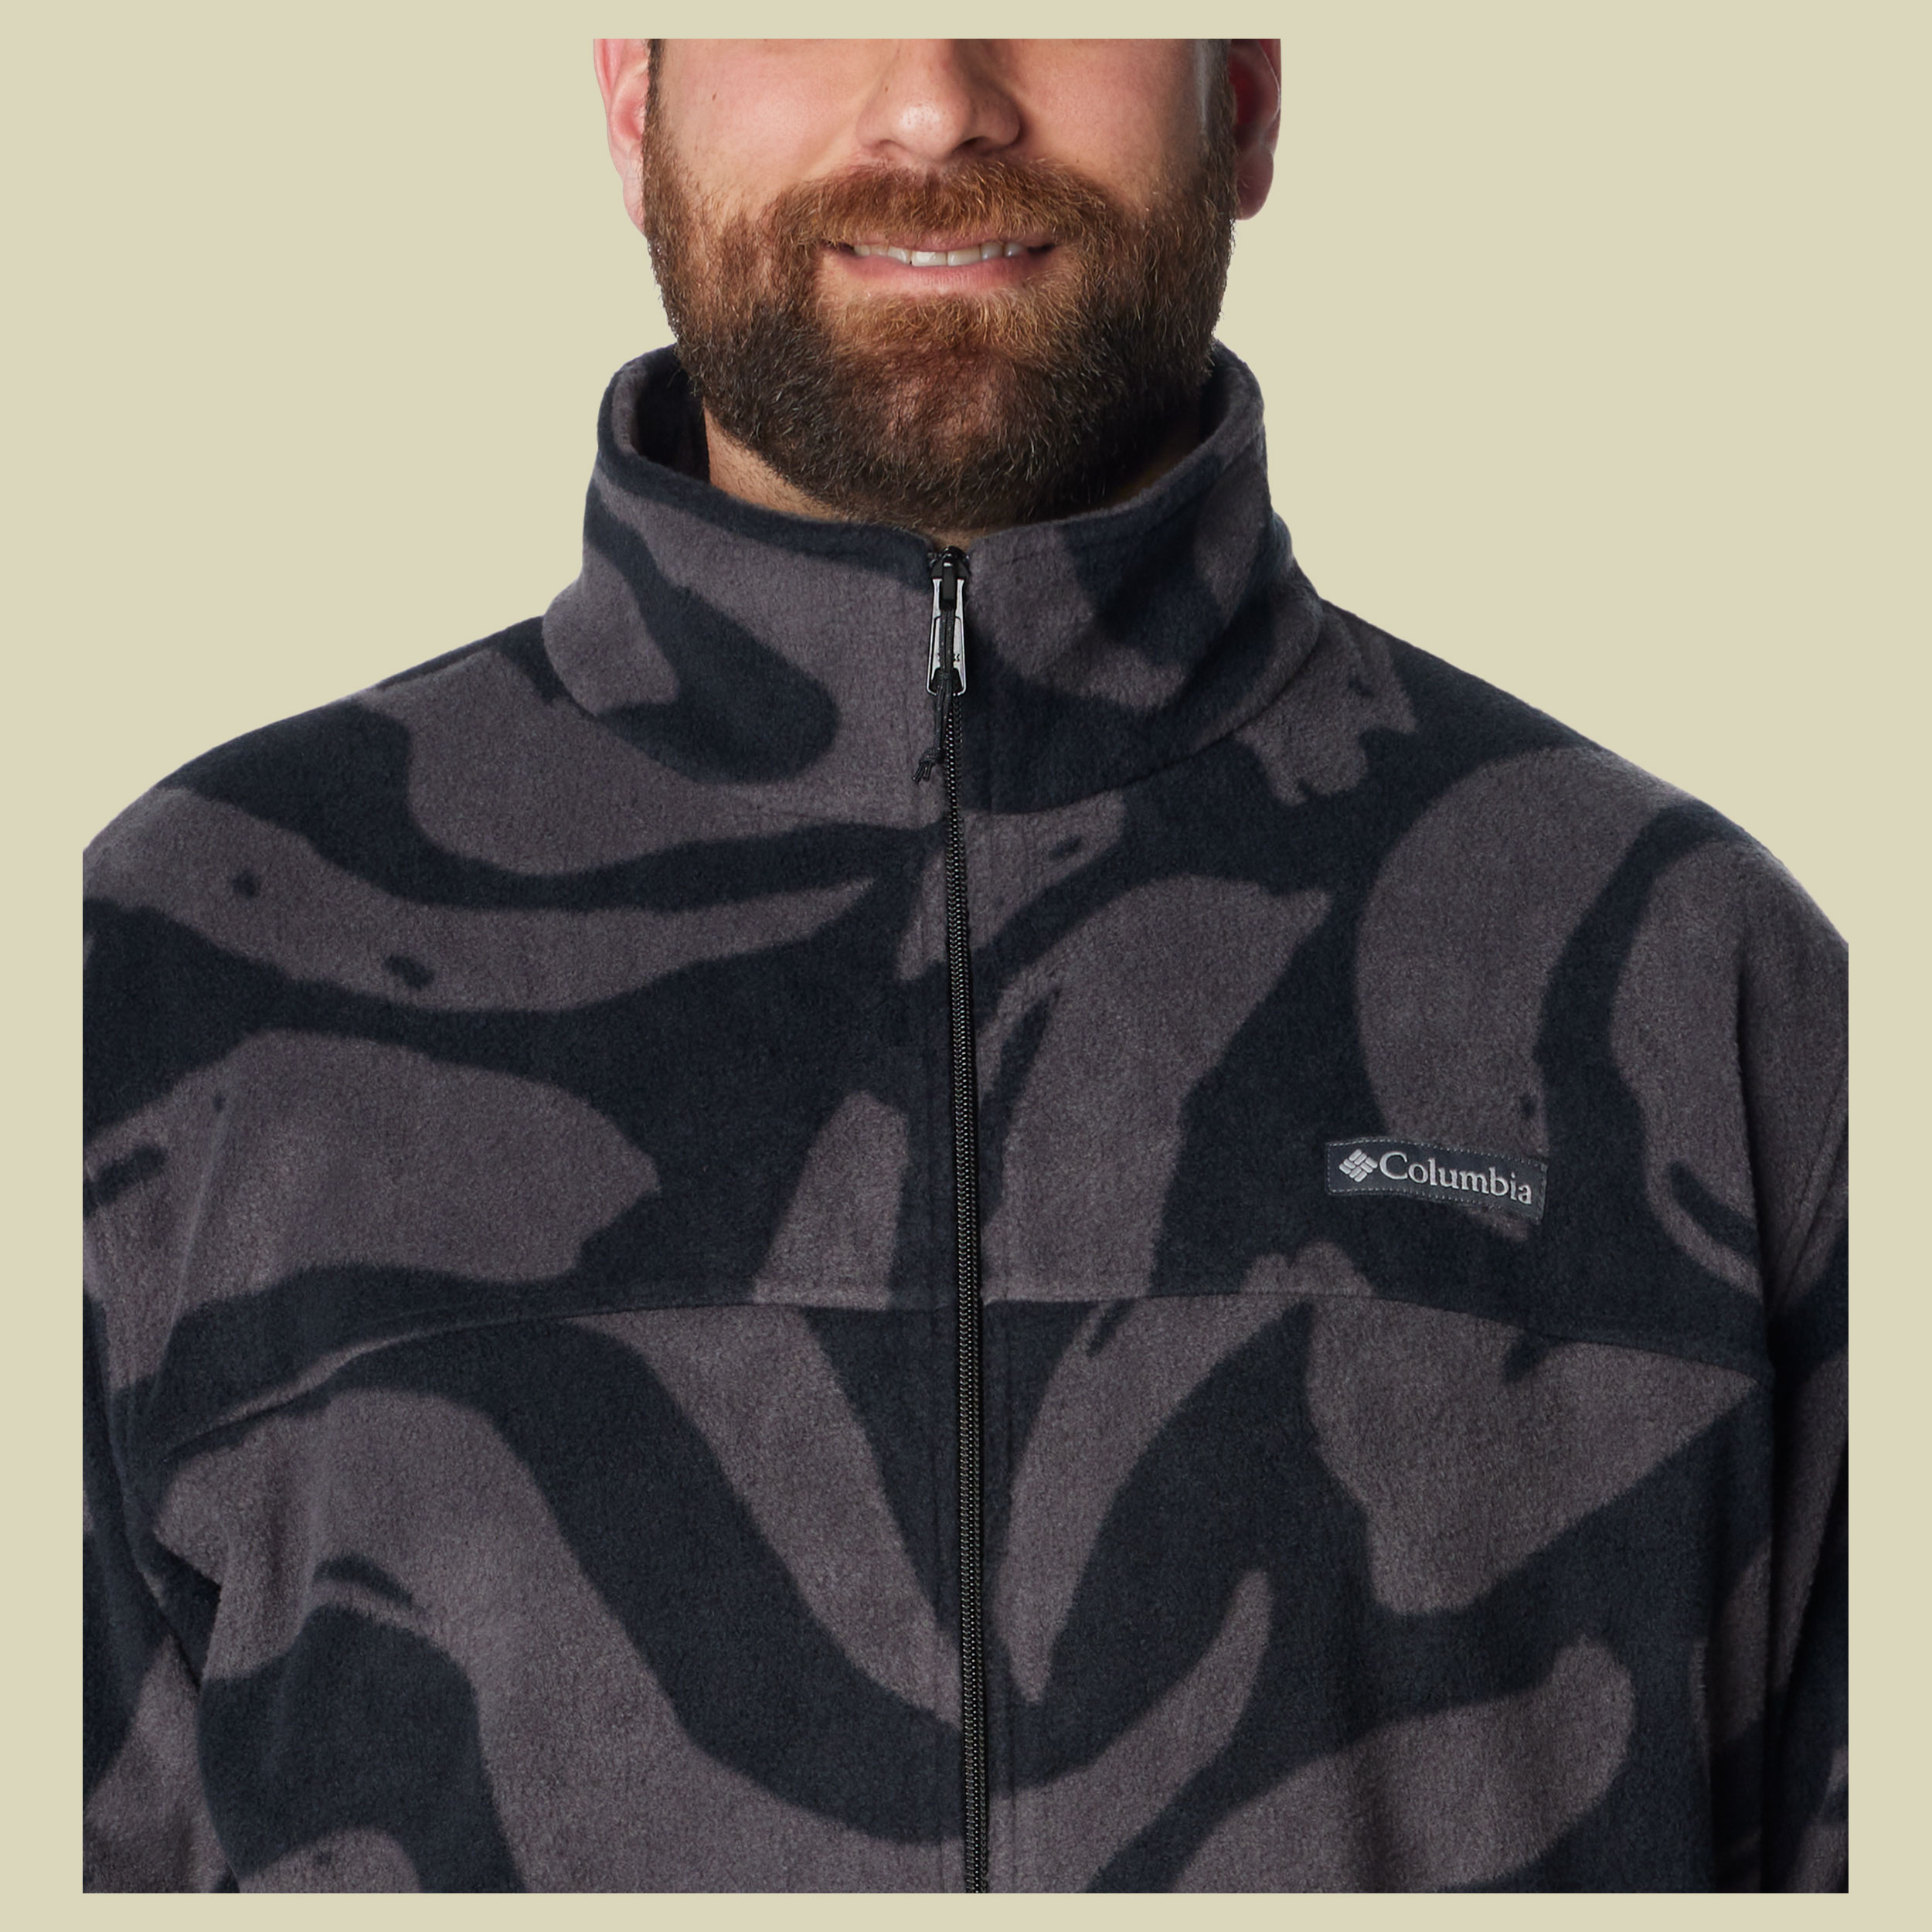 Steens Mountain Printed Jacket Men Größe S Farbe black snowdrift